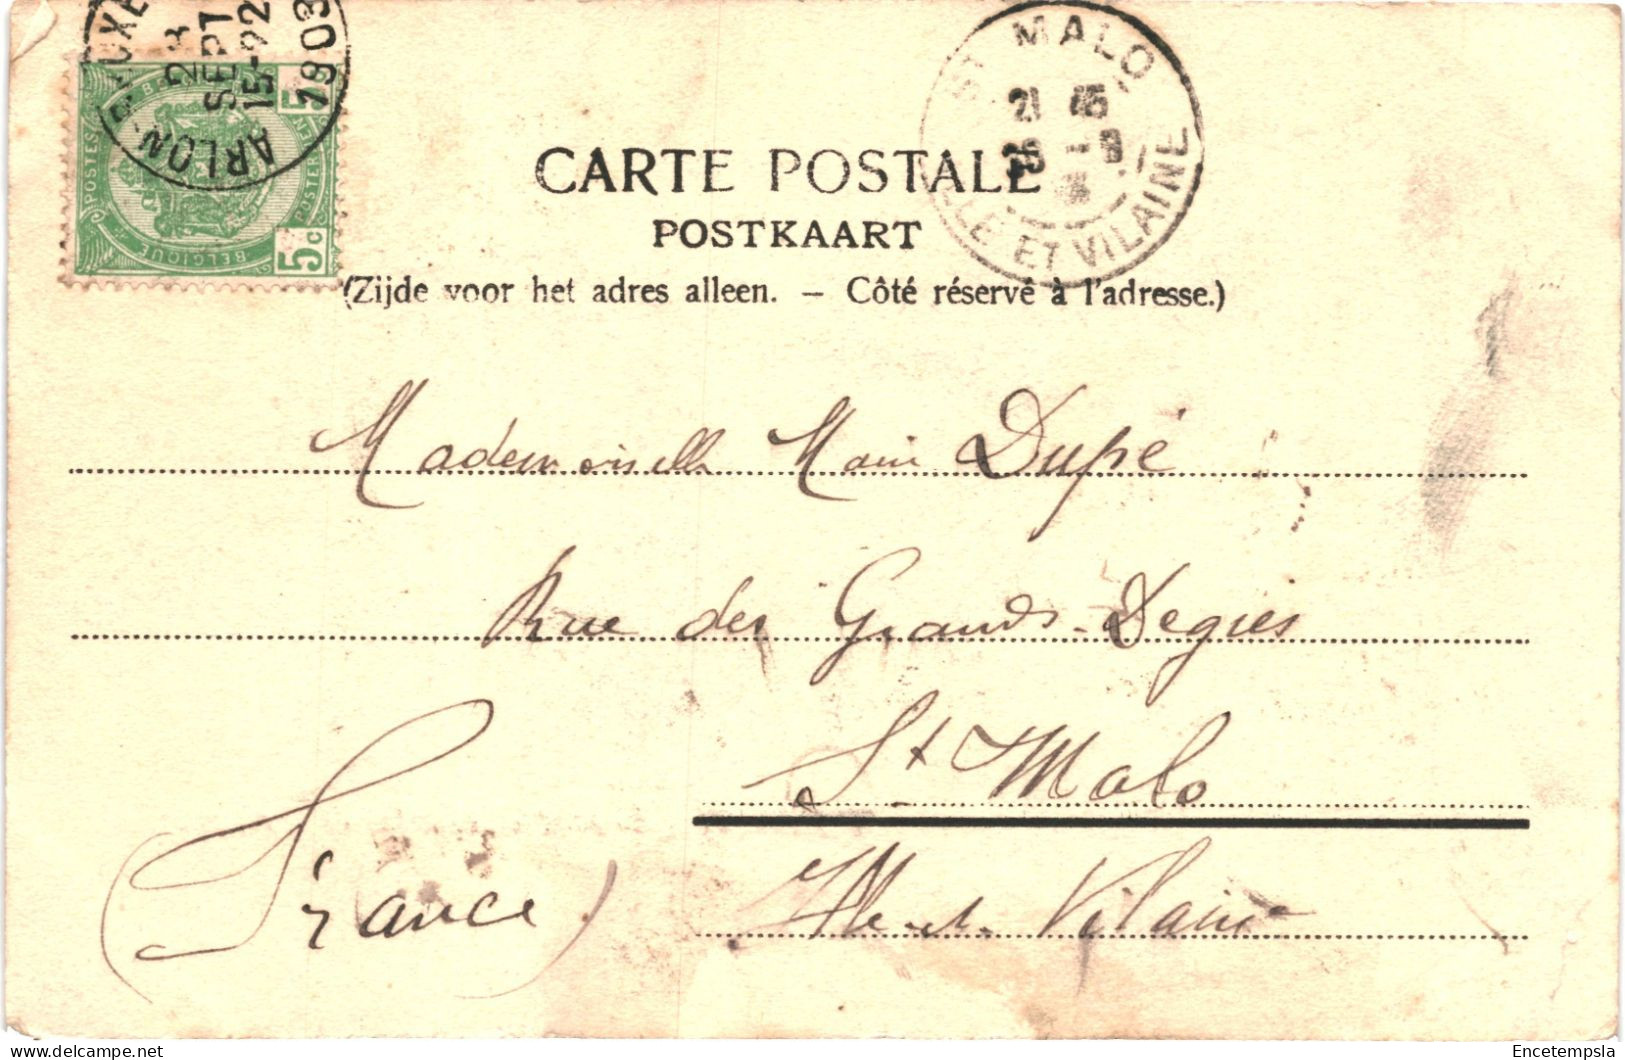 CPA Carte Postale Belgique Tillet Château De Gérimont Et Couvent De Beauplateau - Train 1903 VM78845ok - Sainte-Ode